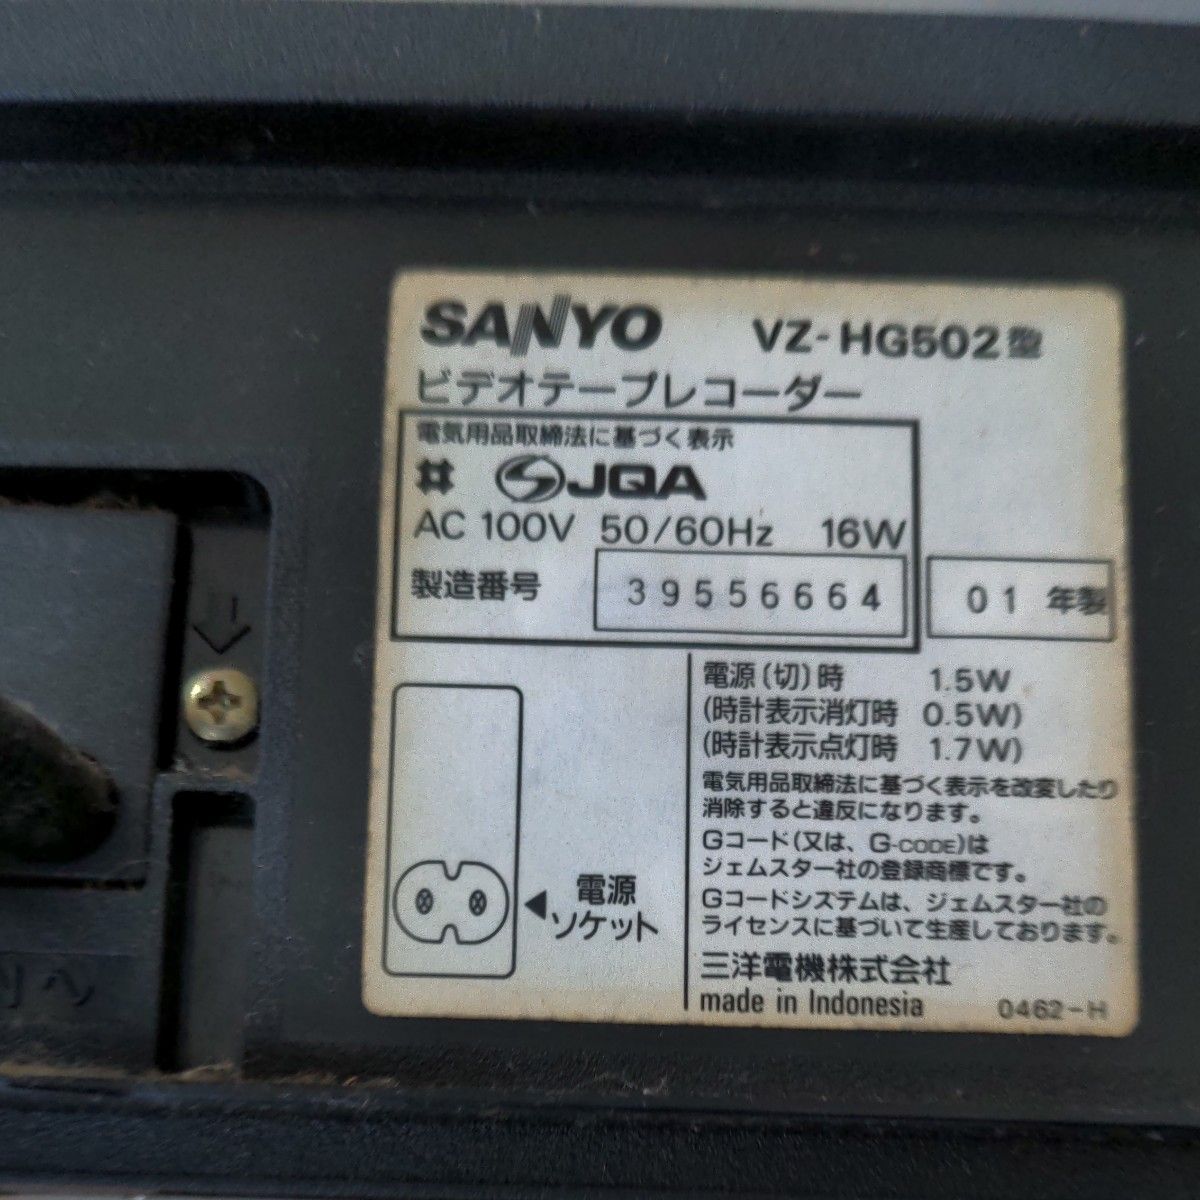 アンティークSANYO三洋電機ビデオデッキvz-hg502リモコン、取扱説明書付ジャンク品送料無料